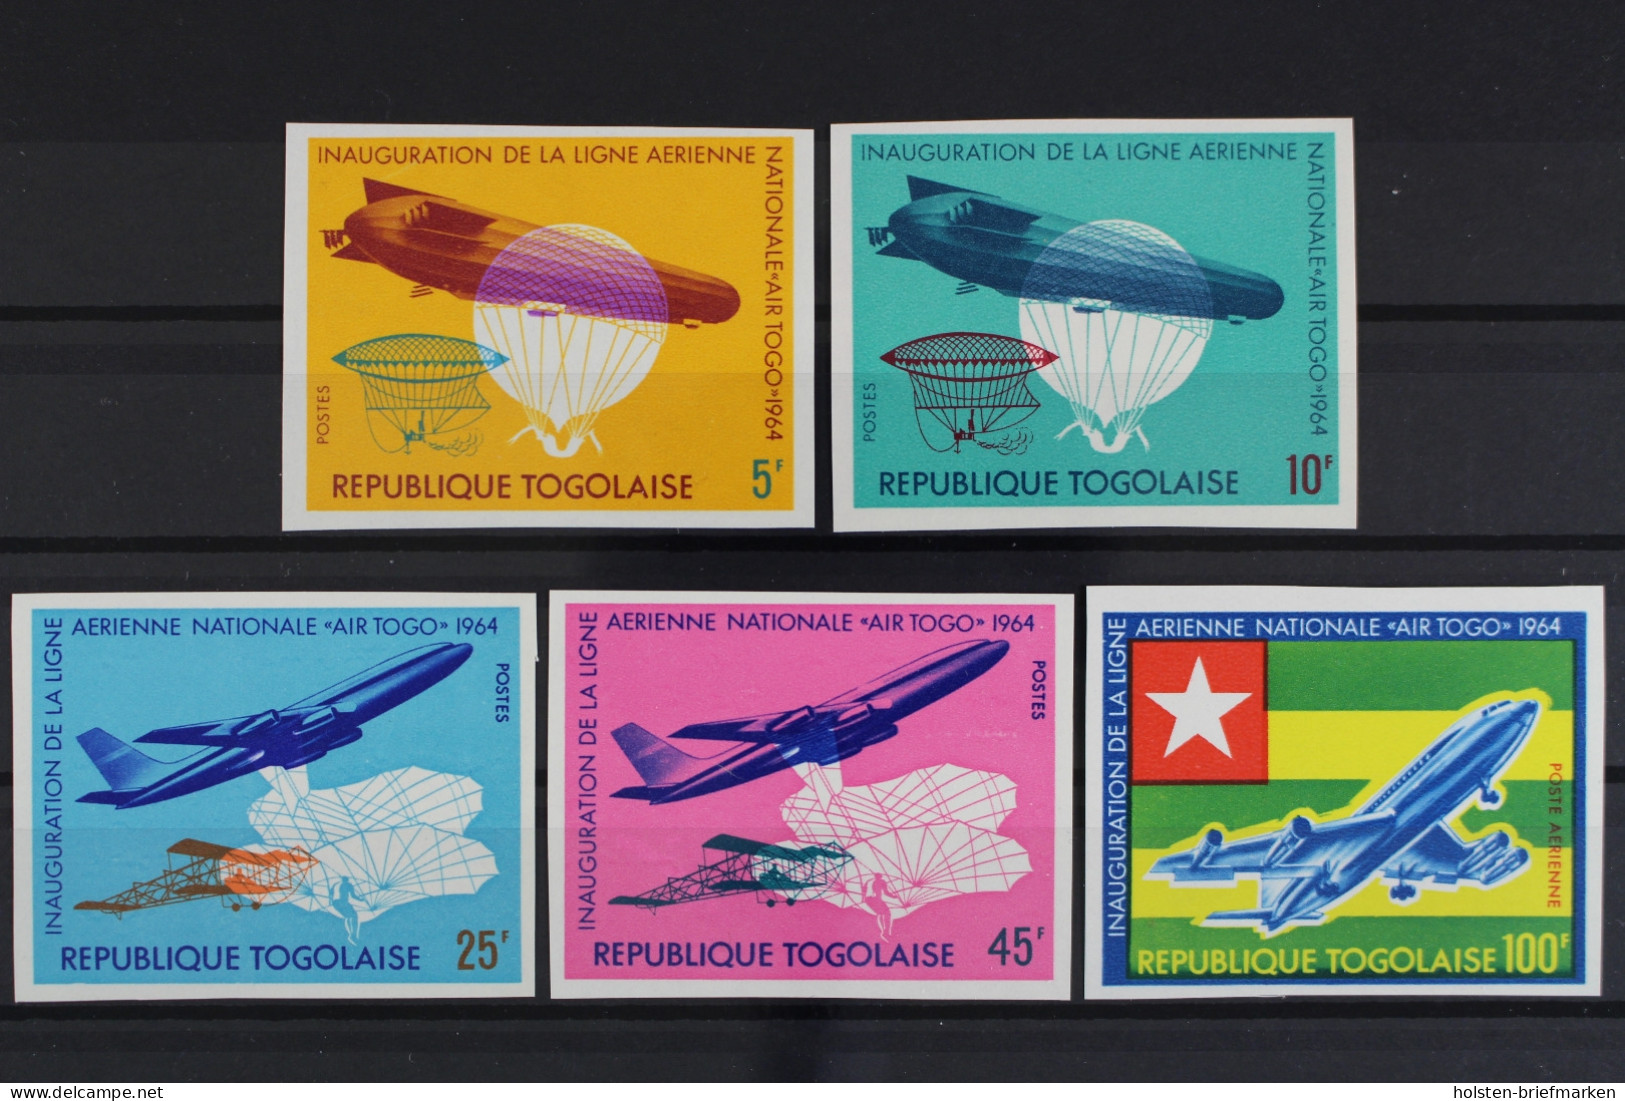 Togo, MiNr. 441-445 B, Flugzeuge, Postfrisch - Togo (1960-...)